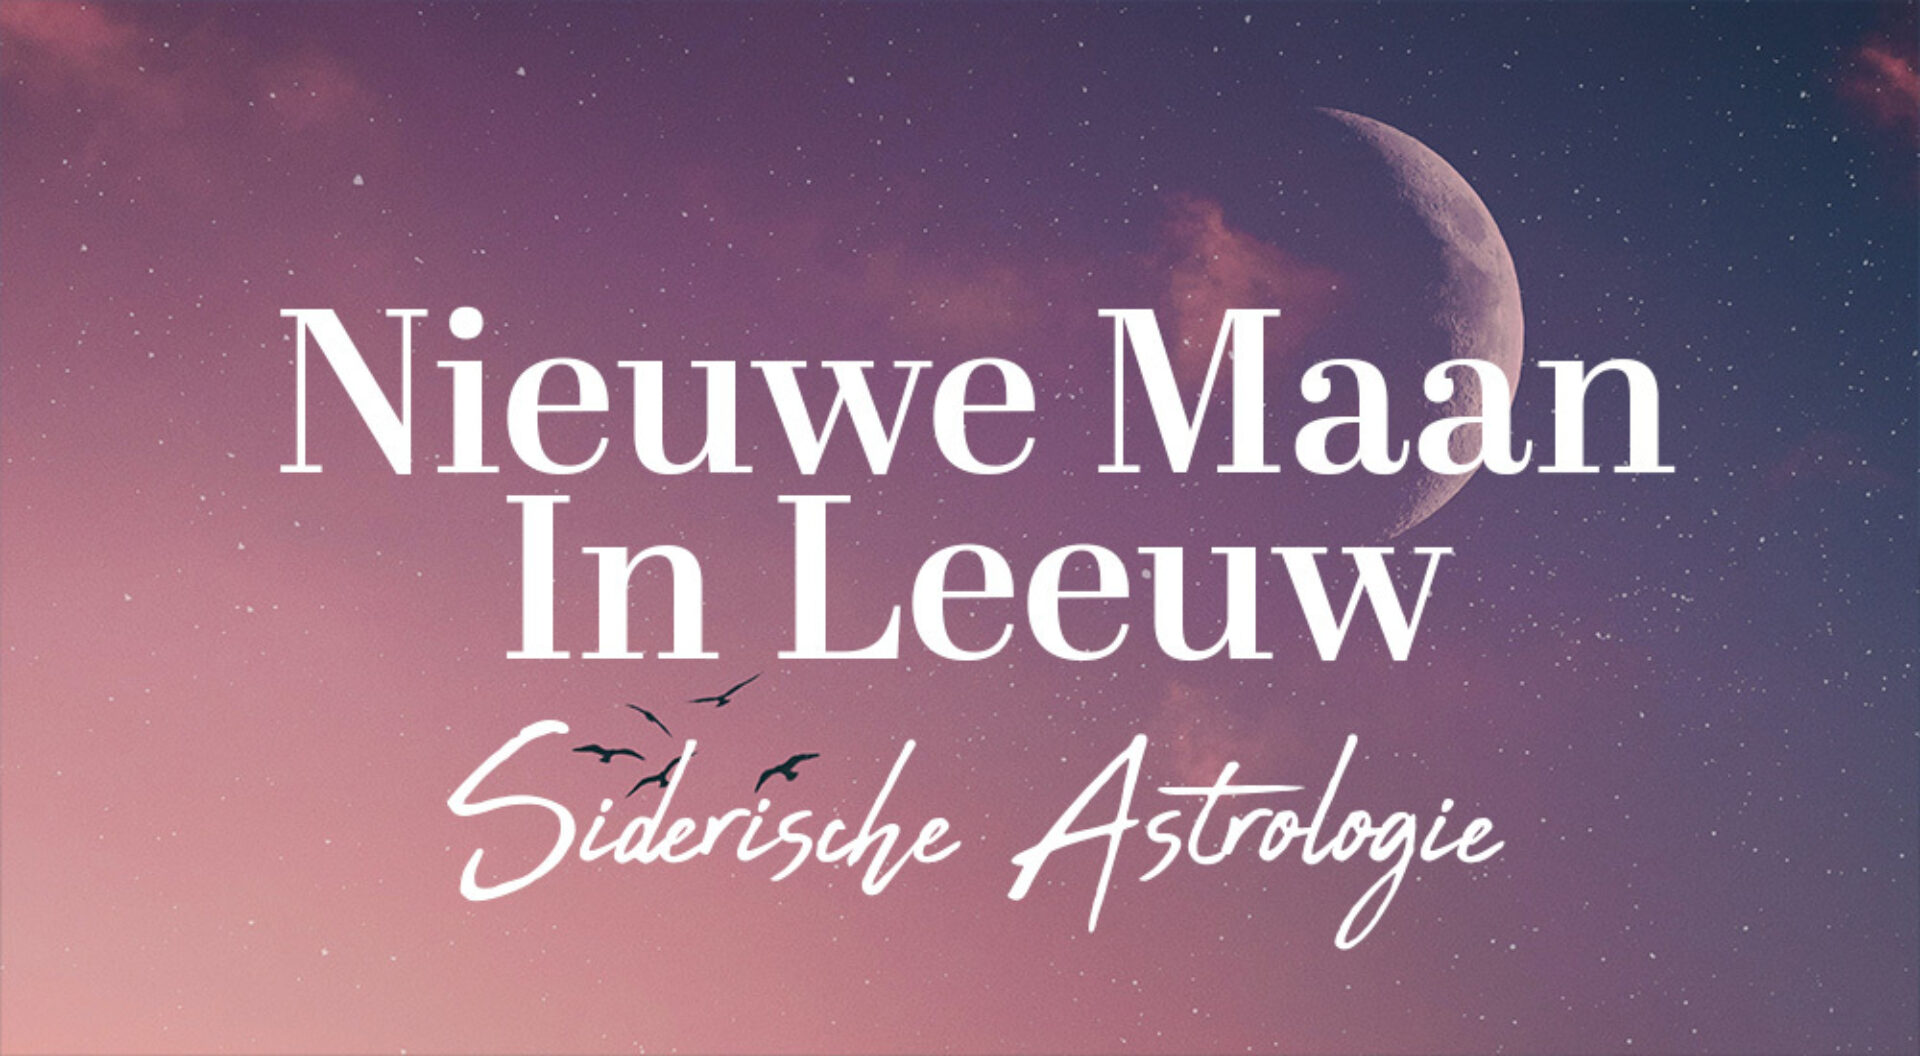 Siderische astrologie: de Nieuwe Maan in Leeuw op 27 augustus 2022